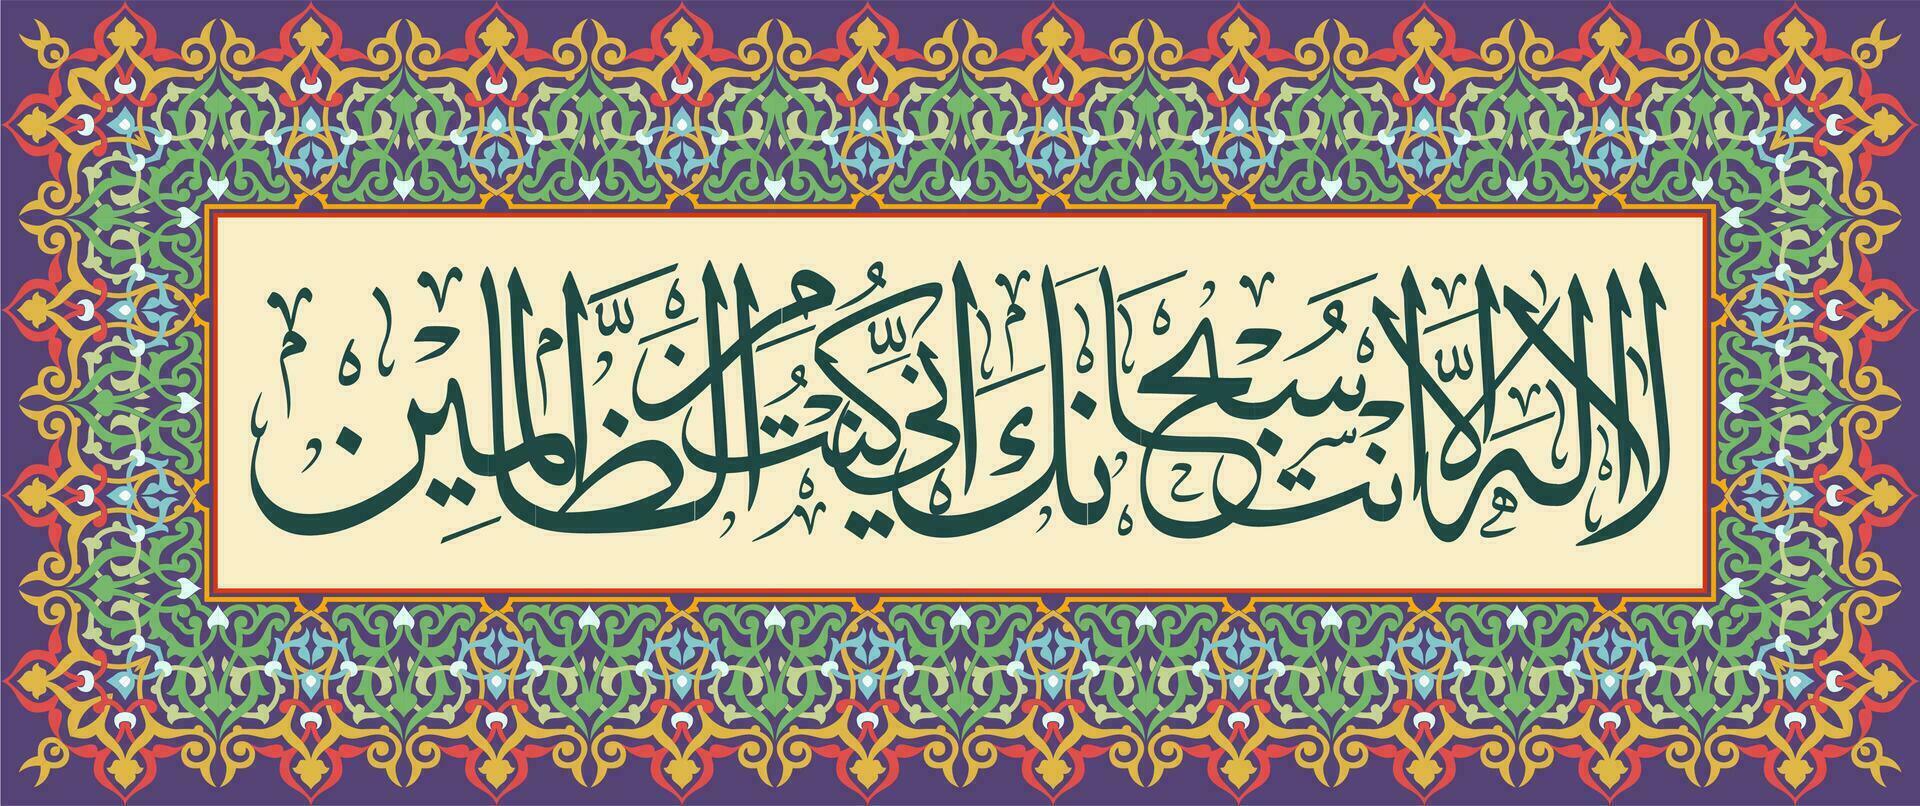 islâmico caligrafia é equipado com decorativo enfeites que significar na verdade Eu ter injustiçado Eu mesmo vetor